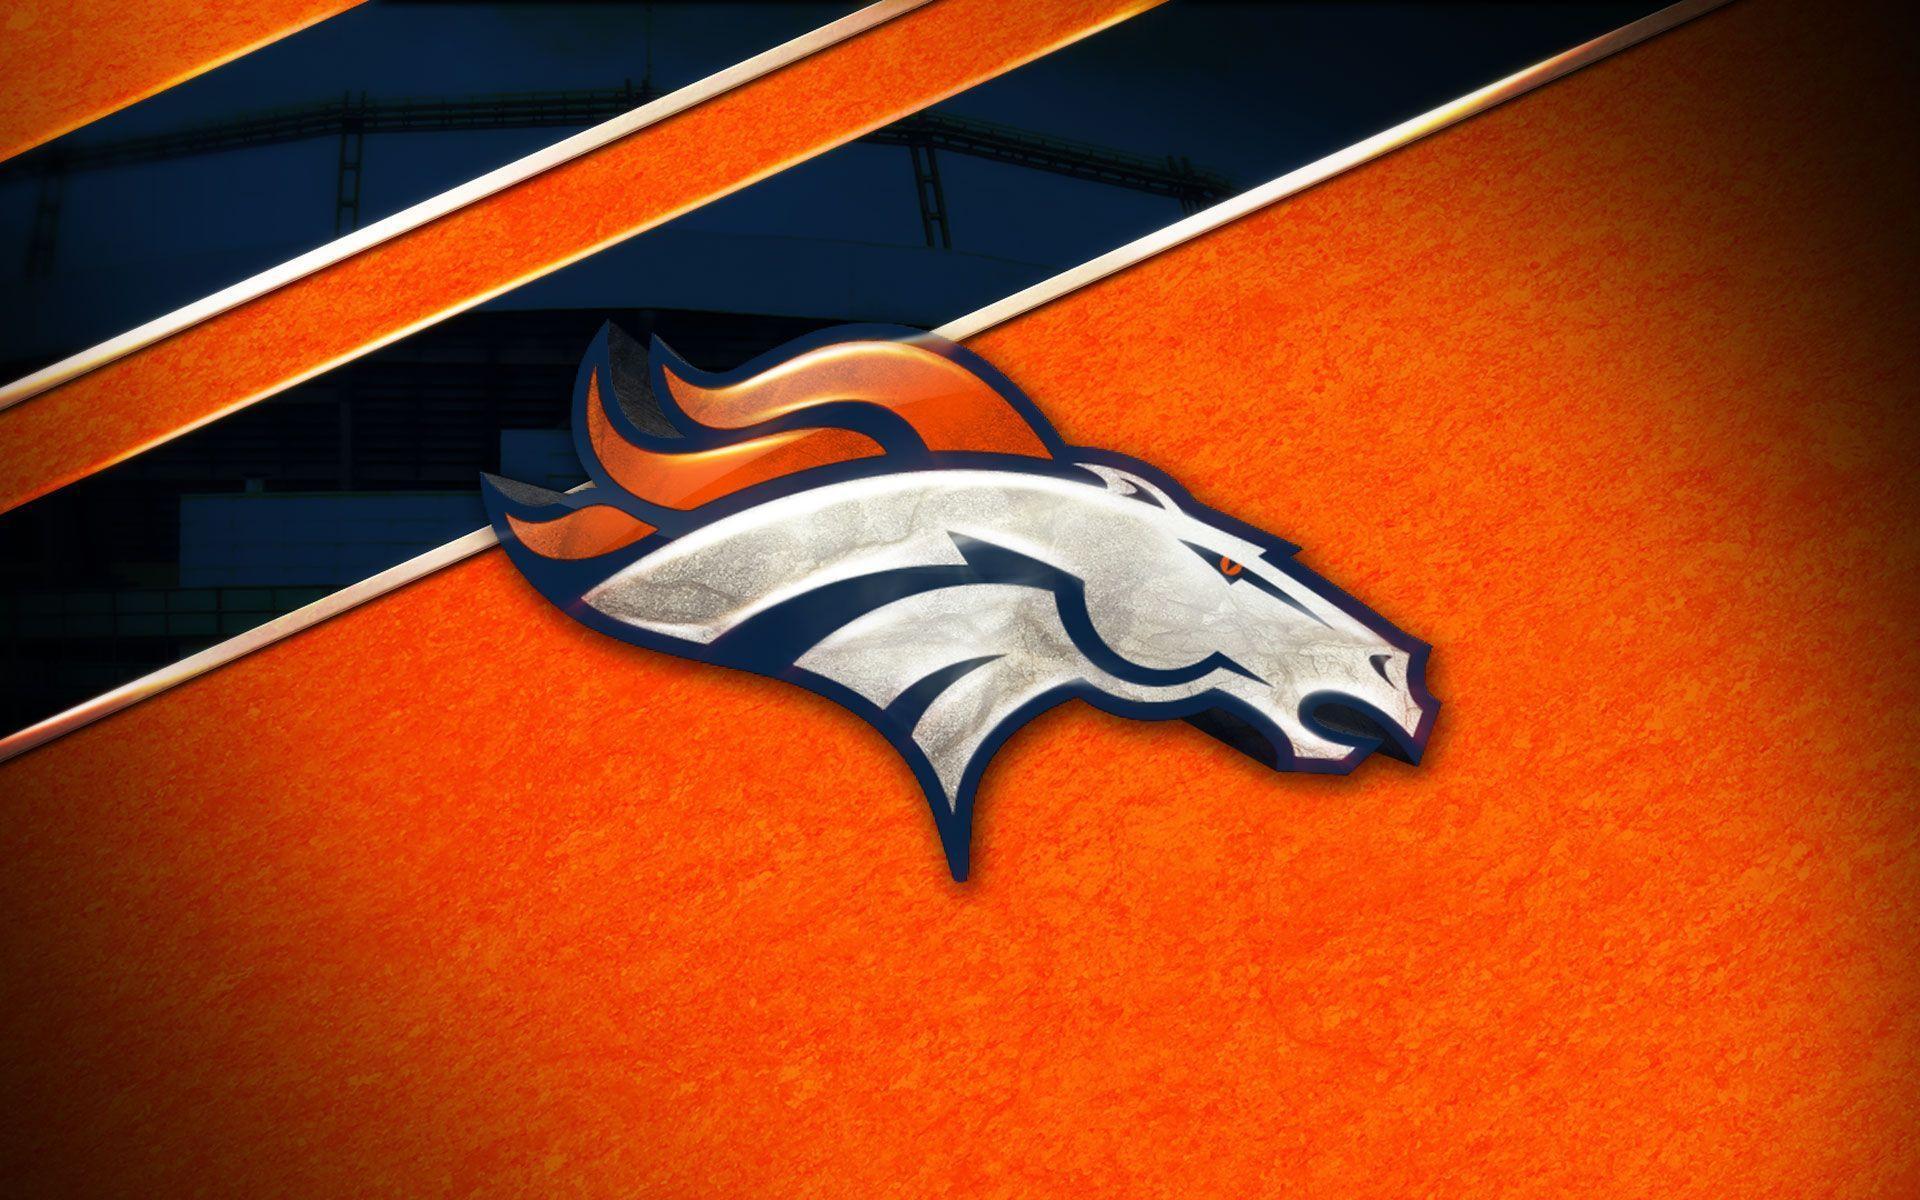 Fondos de pantalla de la NFL: Denver Broncos wallpaper. Fondos de